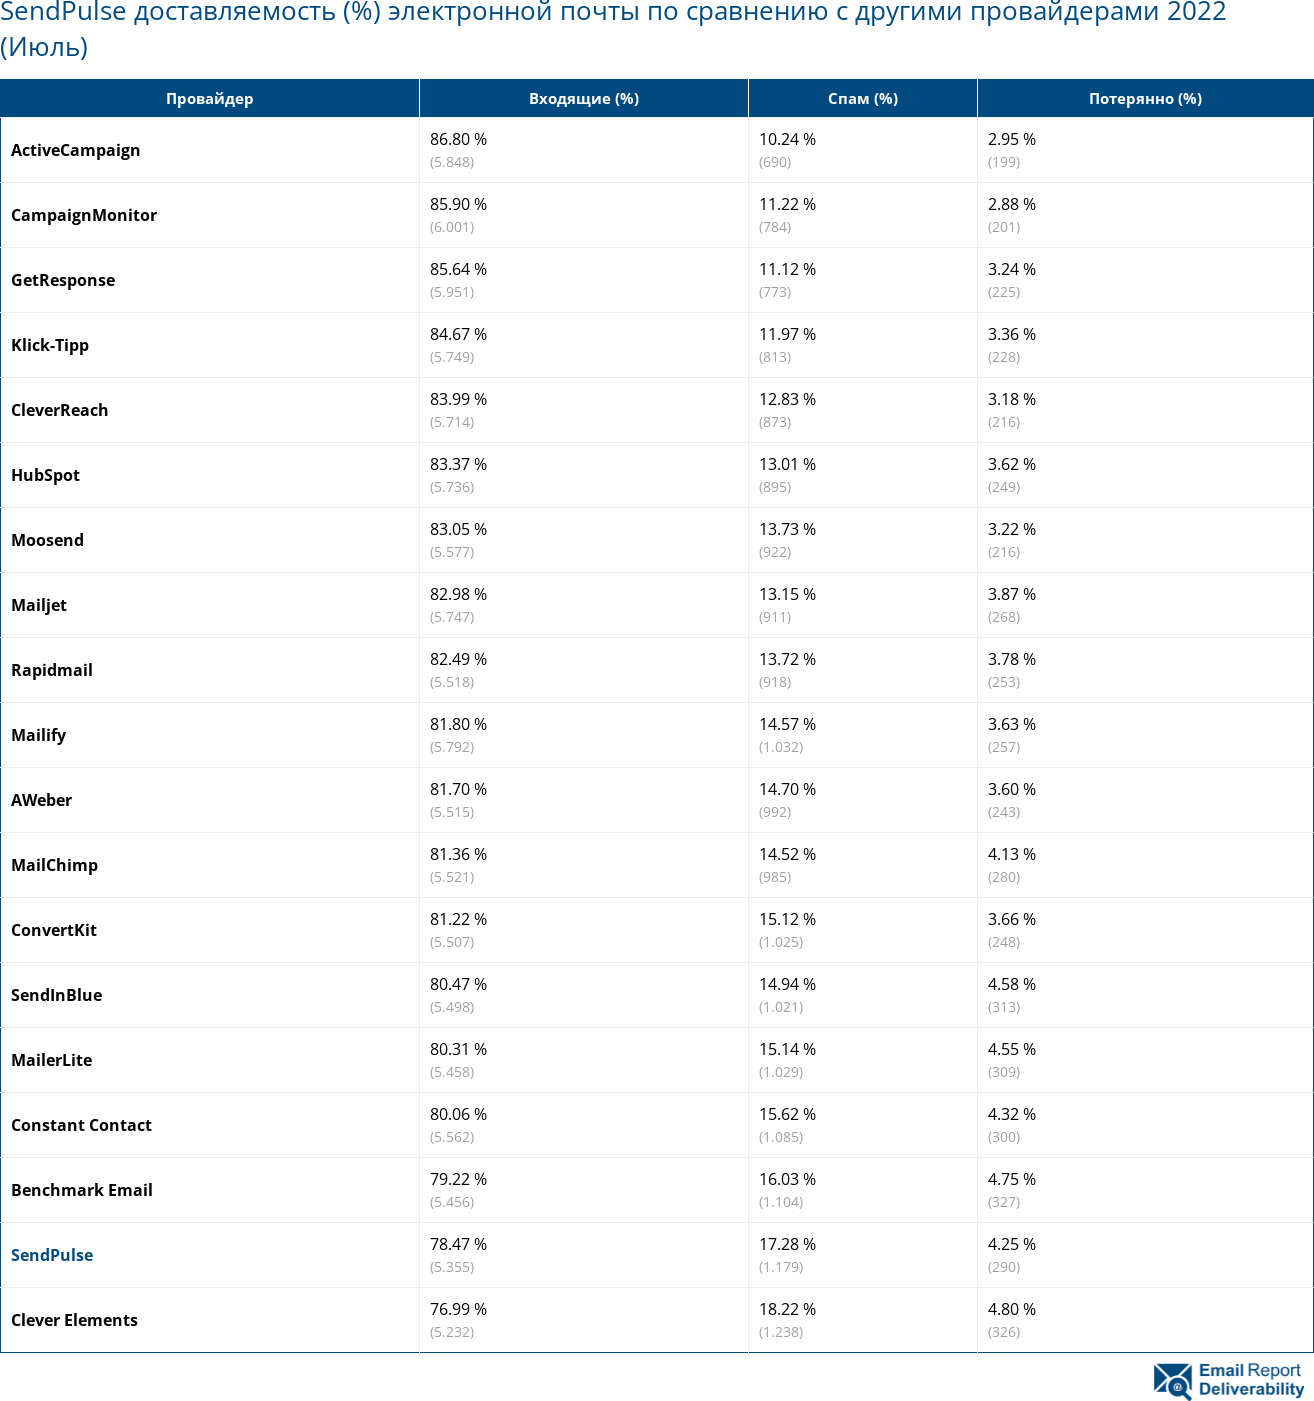 SendPulse доставляемость (%) электронной почты по сравнению с другими провайдерами 2022 (Июль)